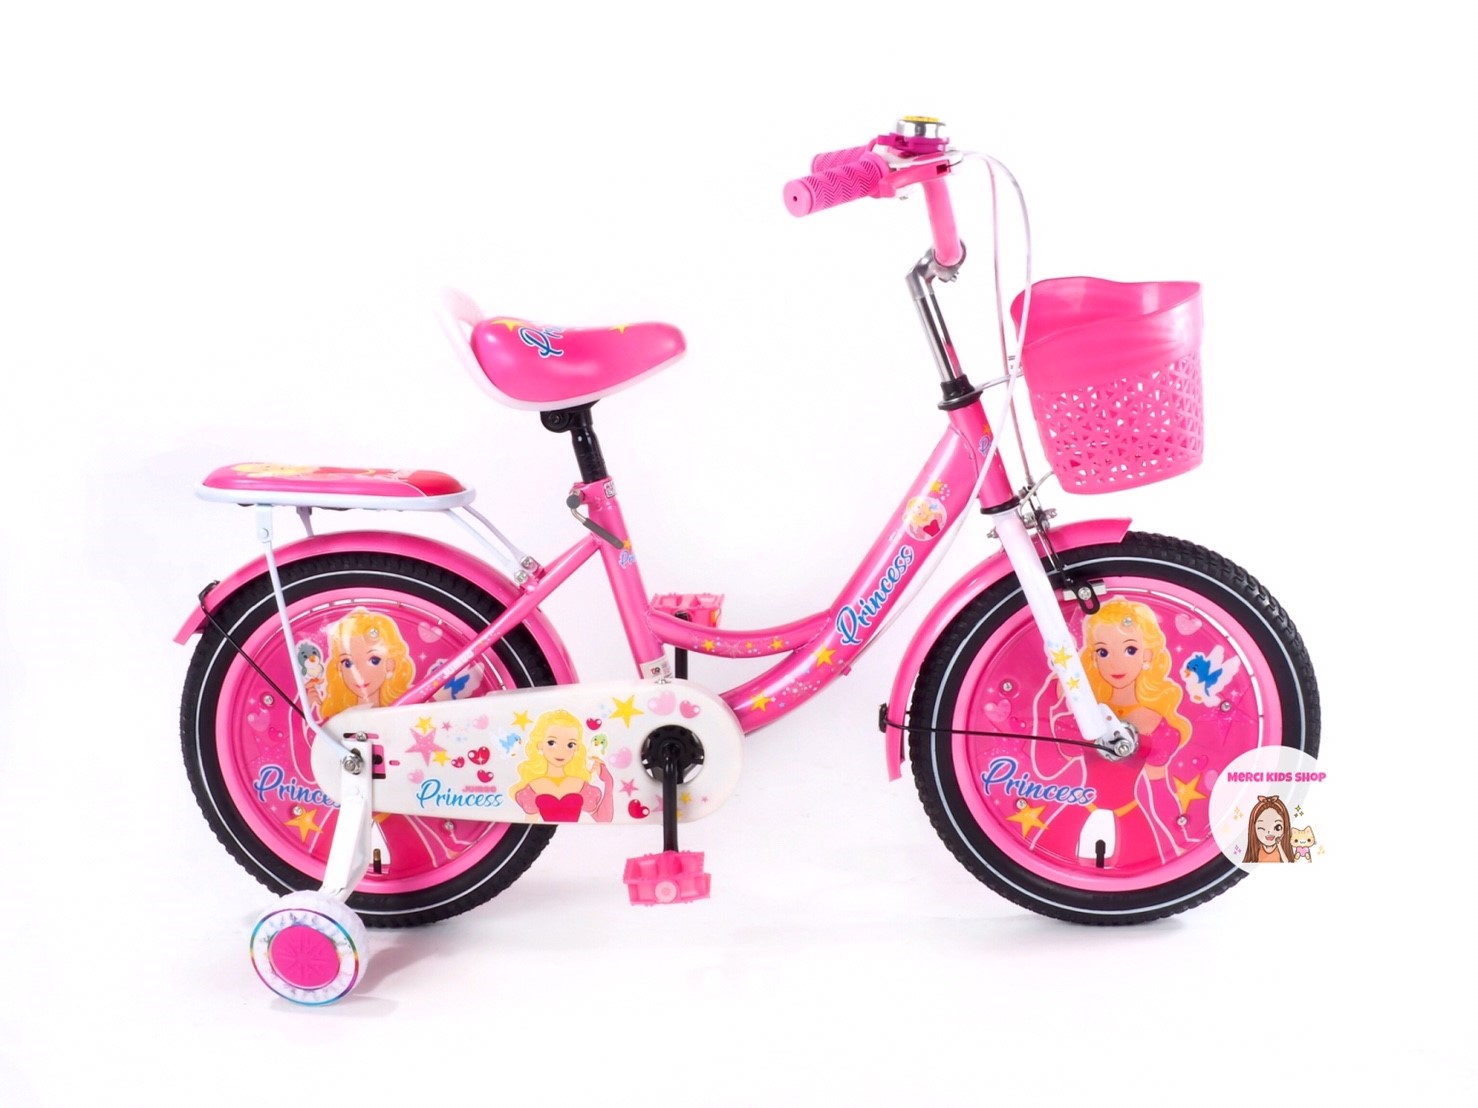 จักรยานเด็ก 16นิ้ว เจ้าหญิง รถจักรยานเจ้าหญิง จักรยานเจ้าหญิง สวยๆ น่ารักๆ รถจักรยานเด็ก Jumbo-2122